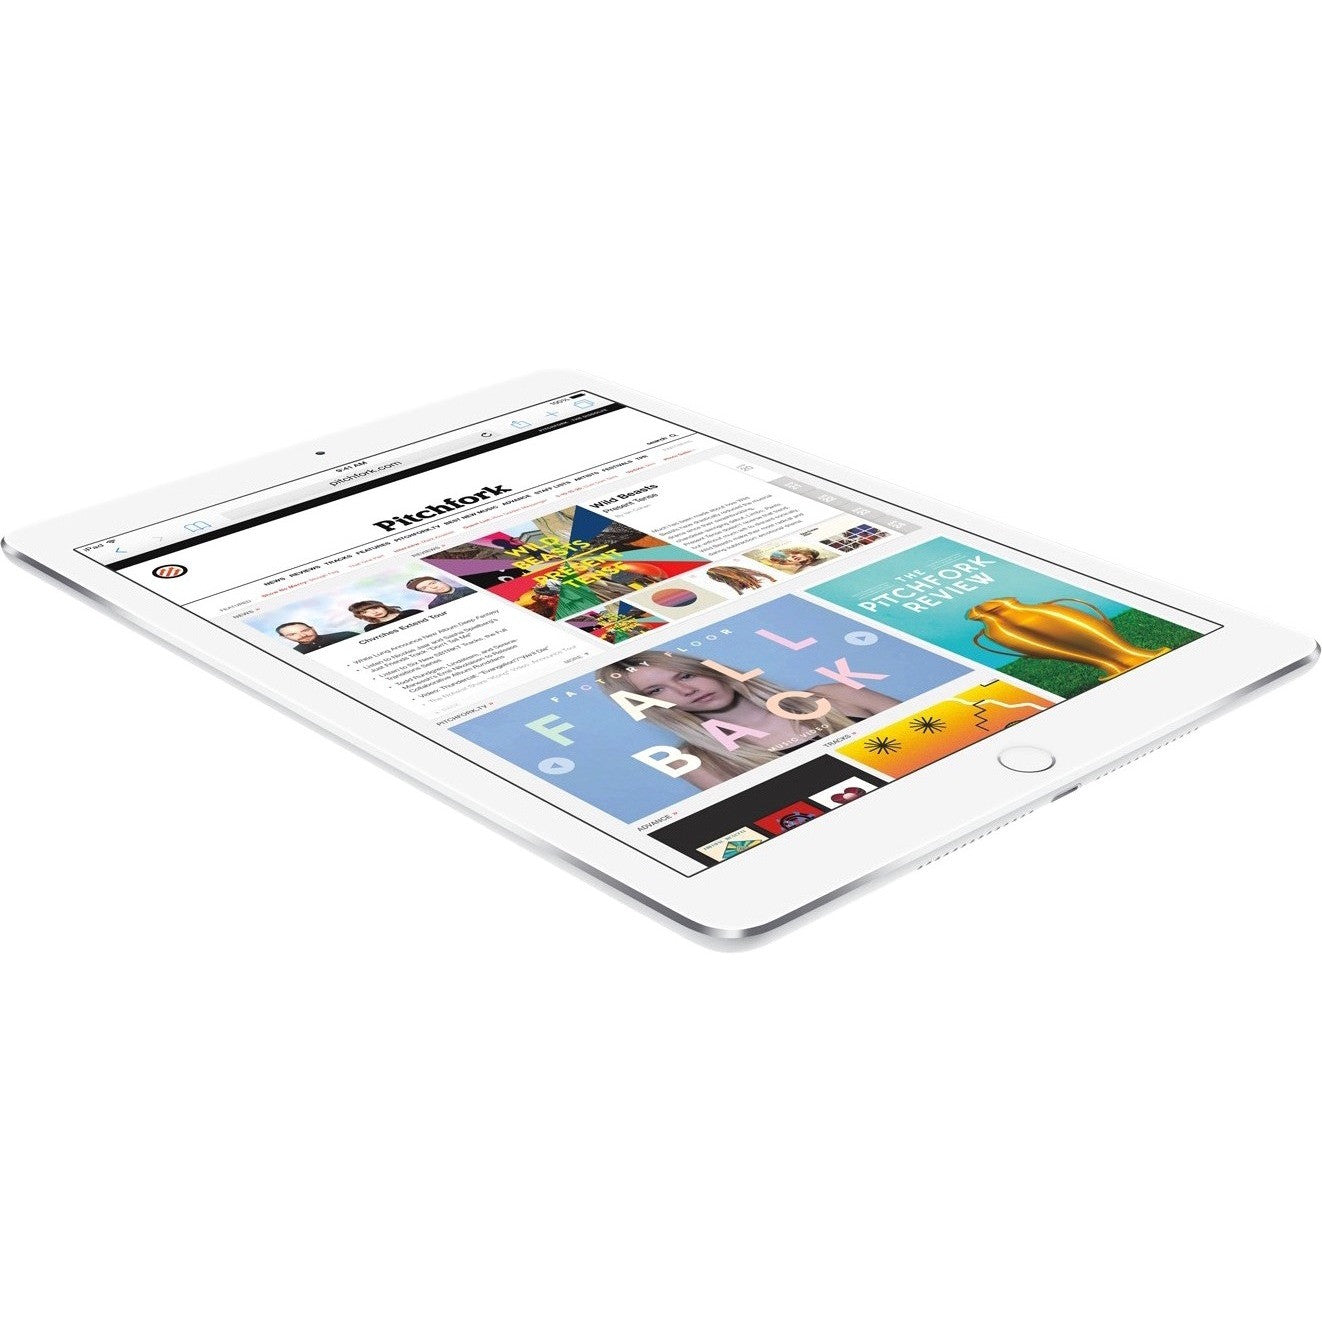 Apple iPad Air 2 32 GB Tablet - 9.7